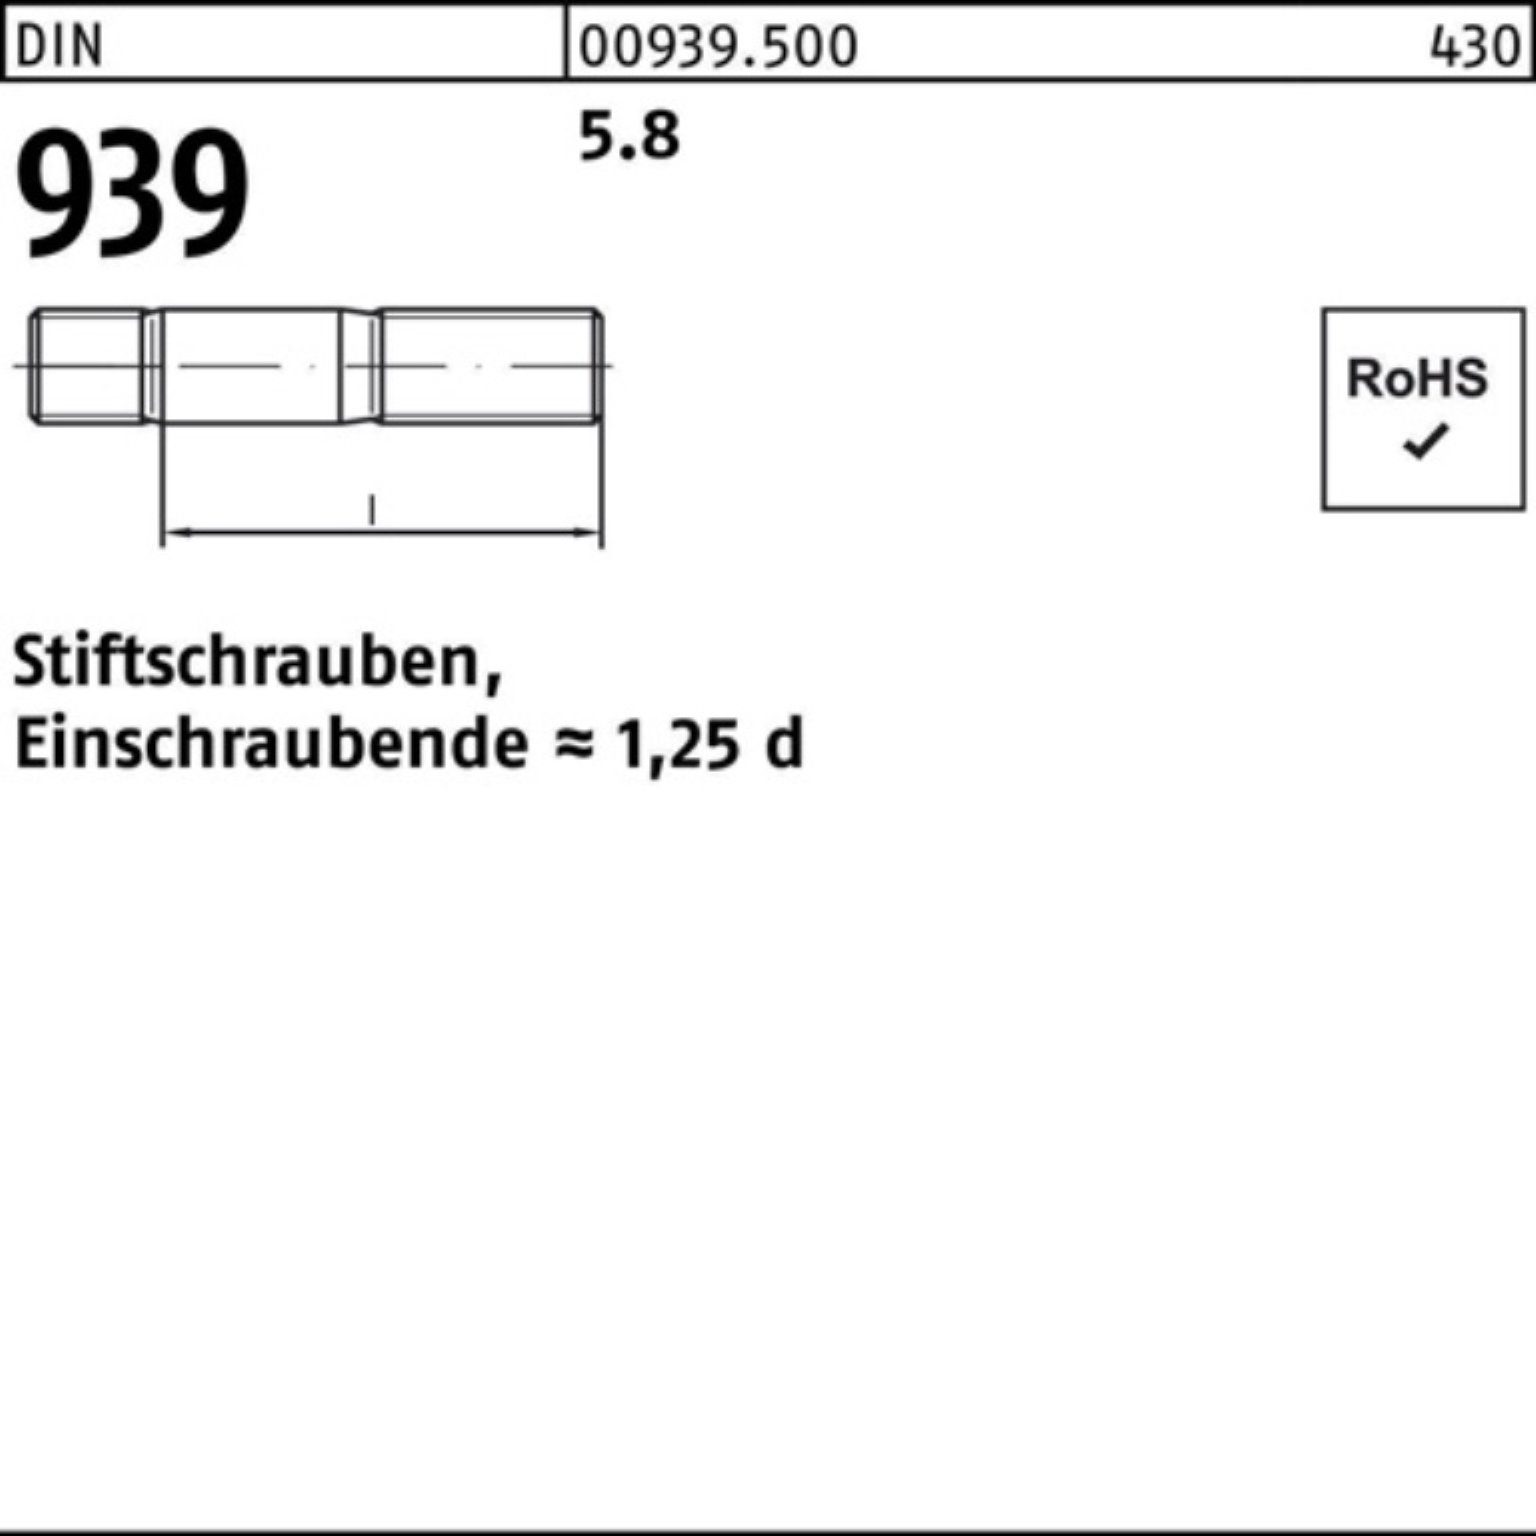 M30x 1 Reyher S Stiftschraube 120 939 Stiftschraube Pack 5.8 DIN 100er Einschraubende=1,25d